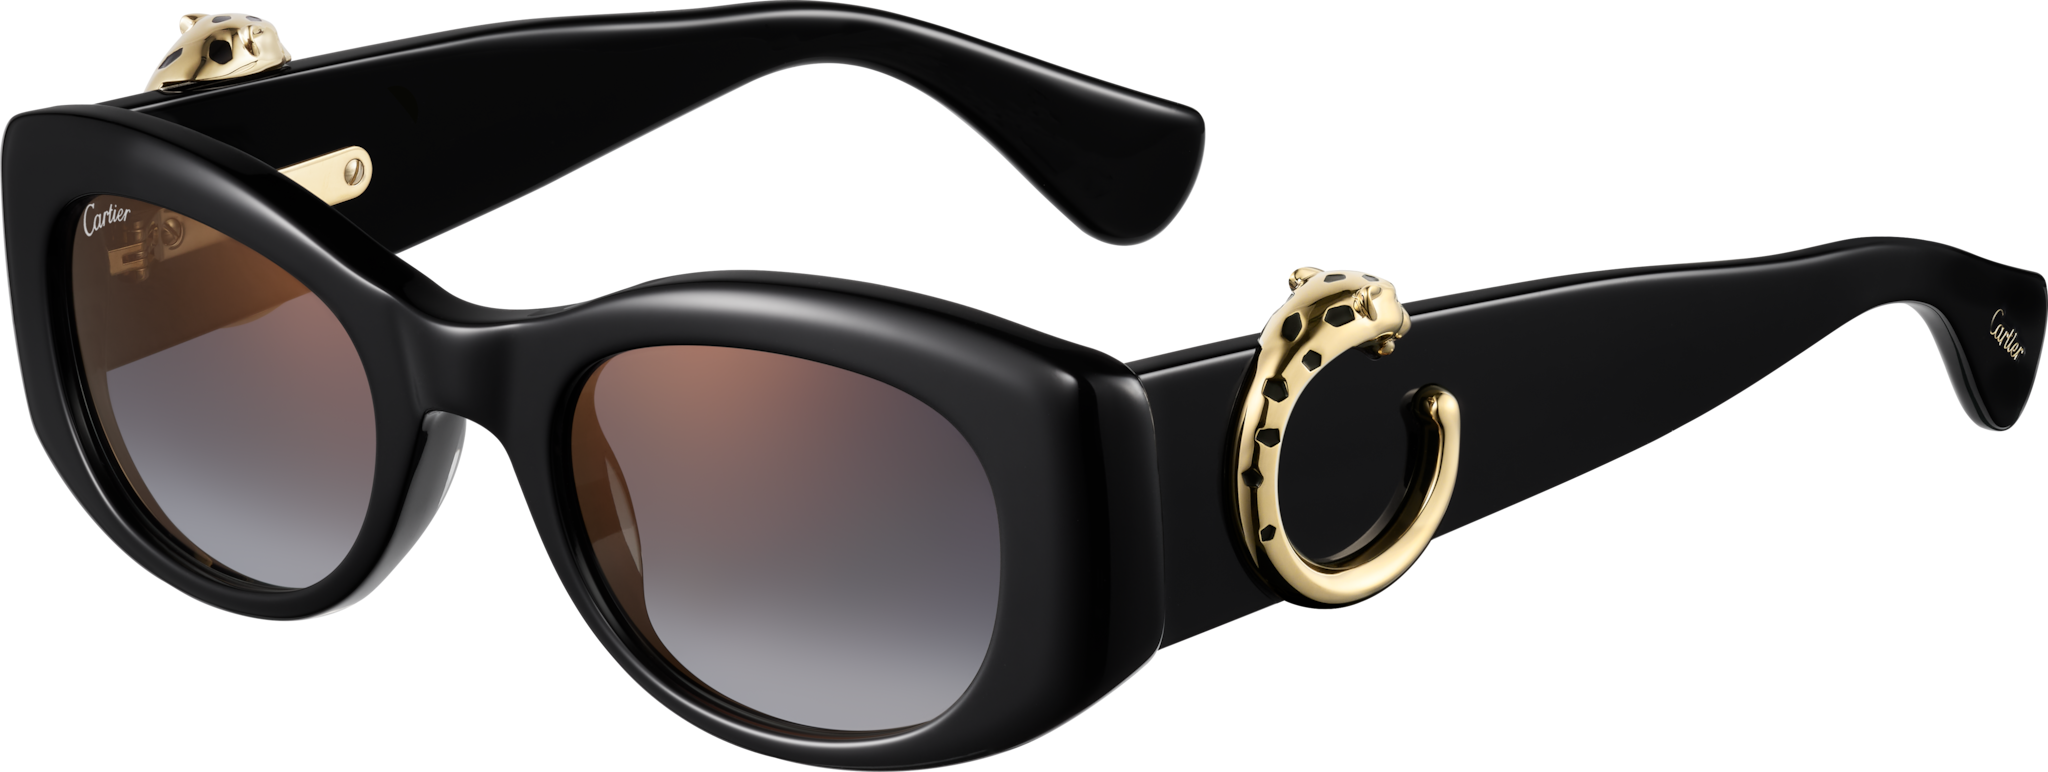 Gafas de sol Panthère de CartierAcetato negro, lentes grises